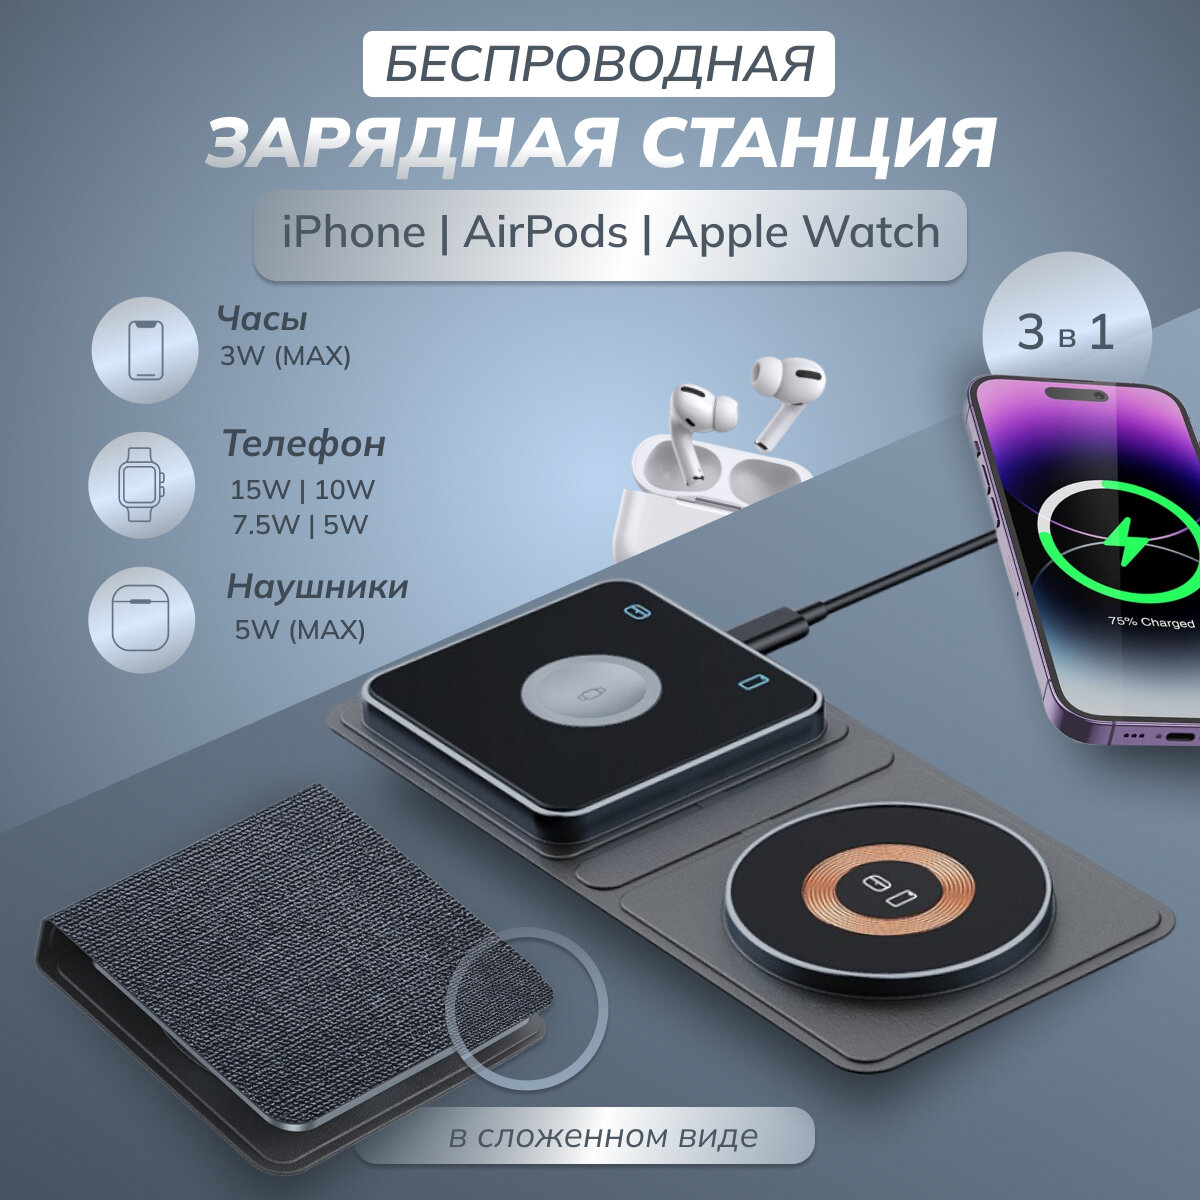 Беспроводная зарядка для Iphone, AirPods и Apple Watch